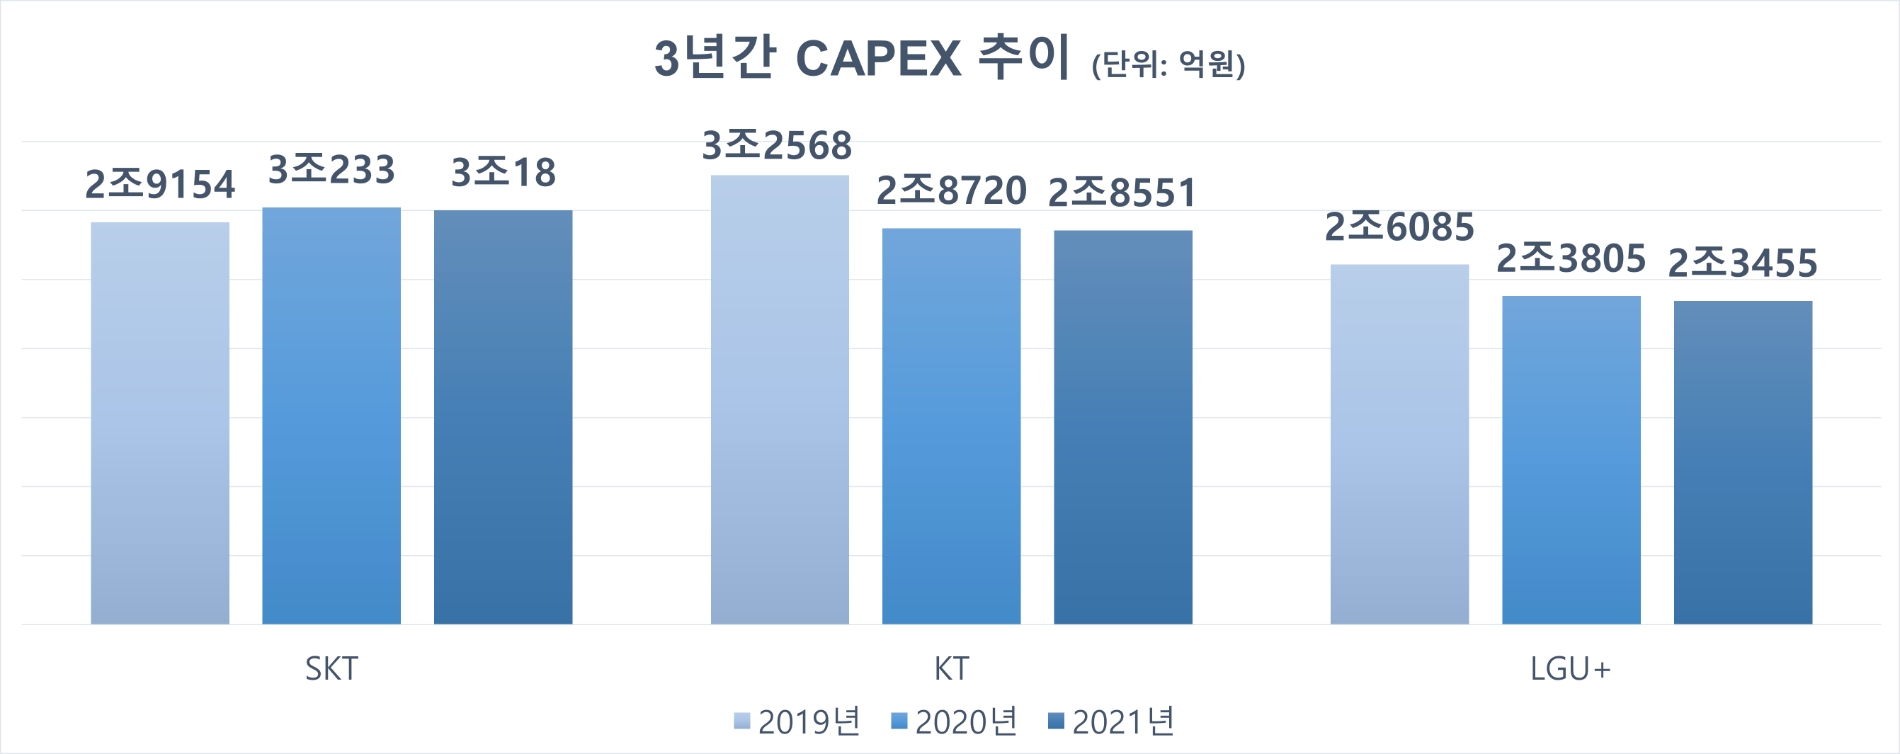 2019년 5G 상용화 이후 이통3사 설비투자(CAPEX) 추이. 자료=금융감독원 전자공시시스템